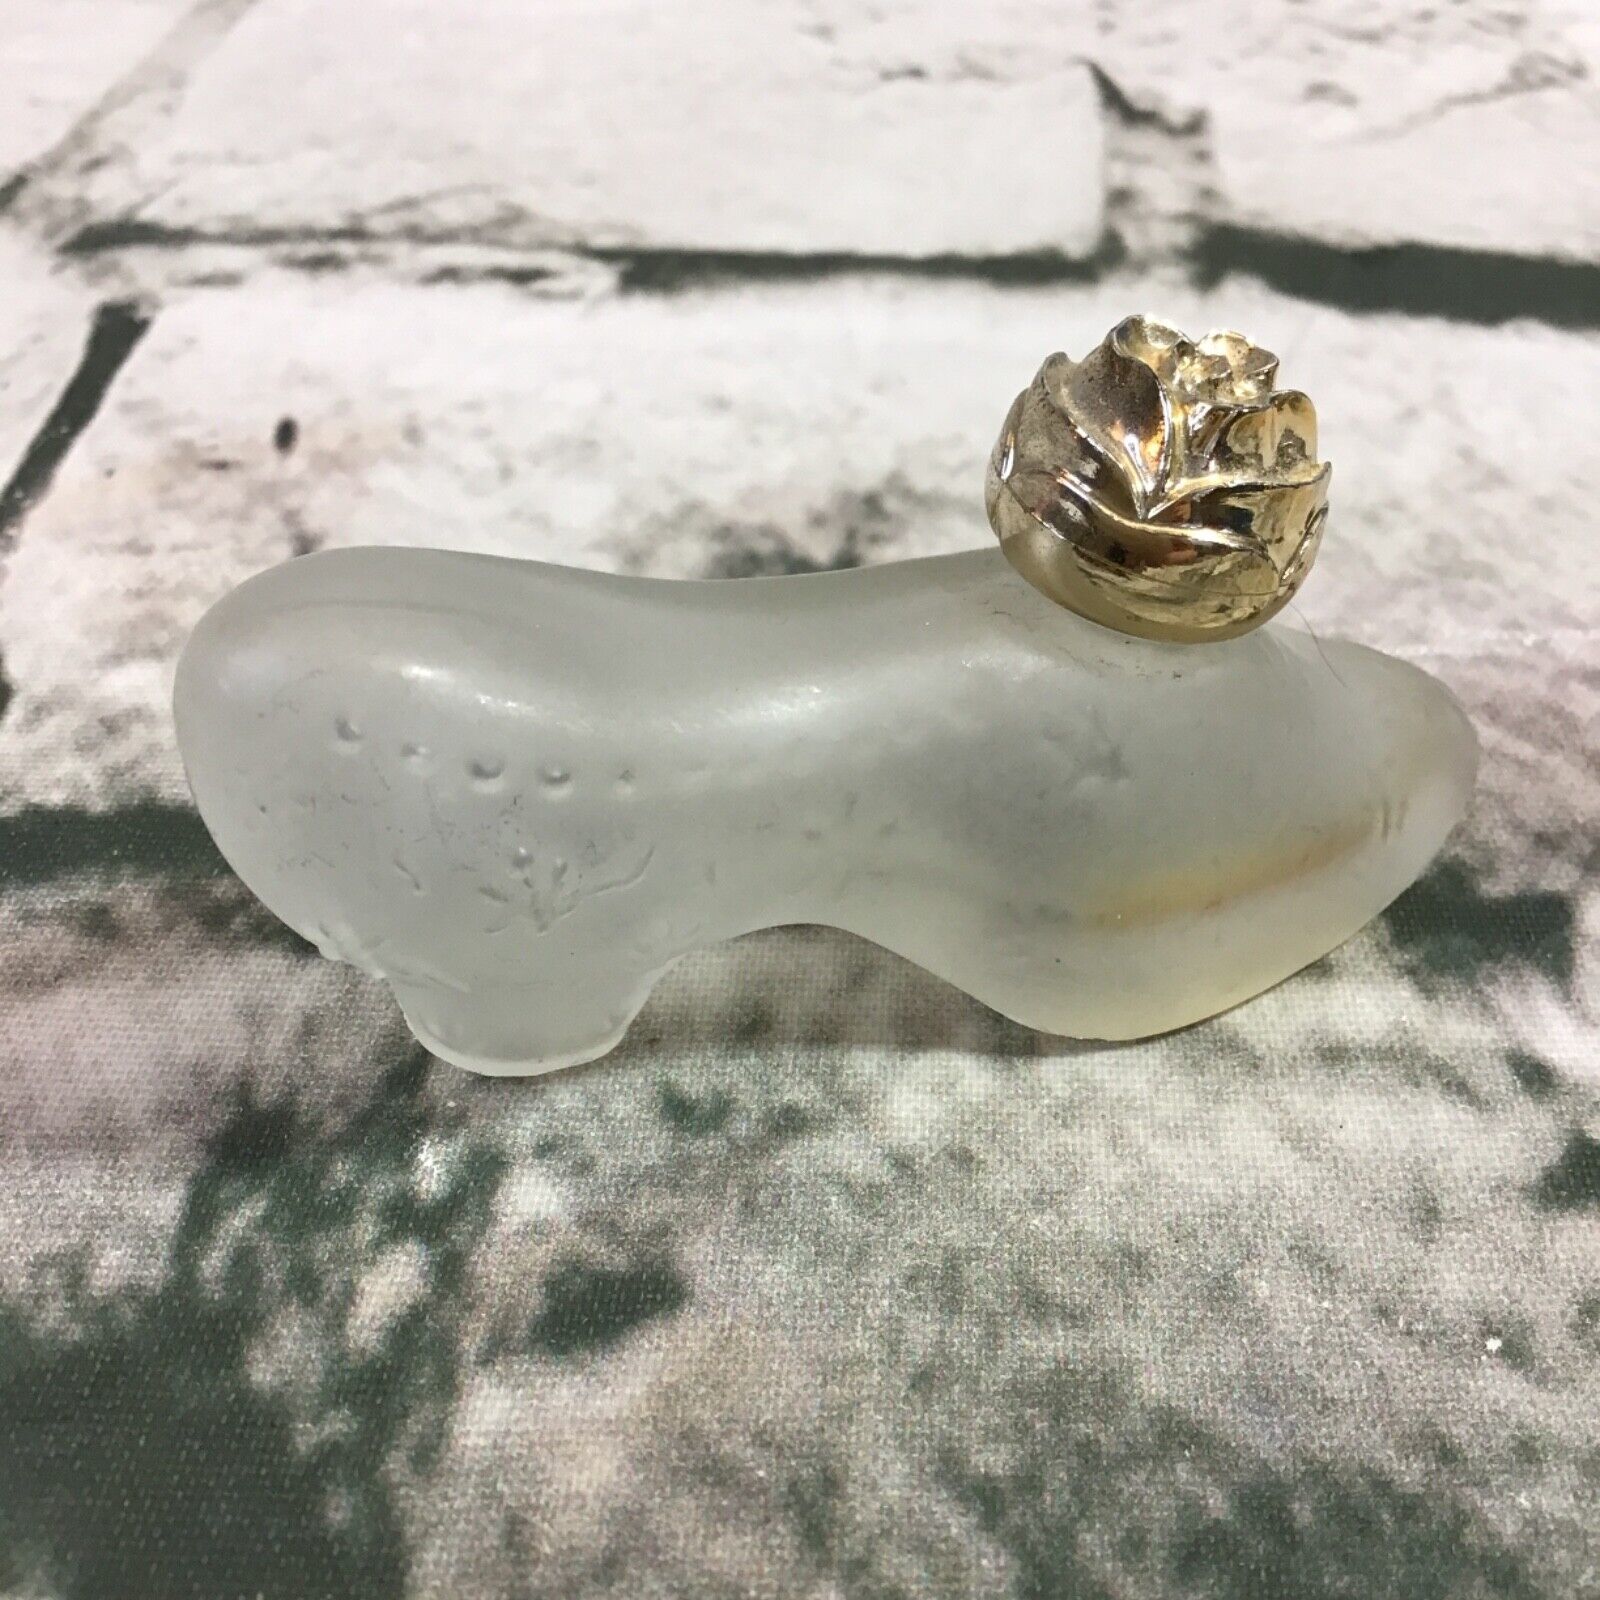 Avon Glass Sonnet Slipper Perfume Bottle Vintage Frosted Empty - $14.84